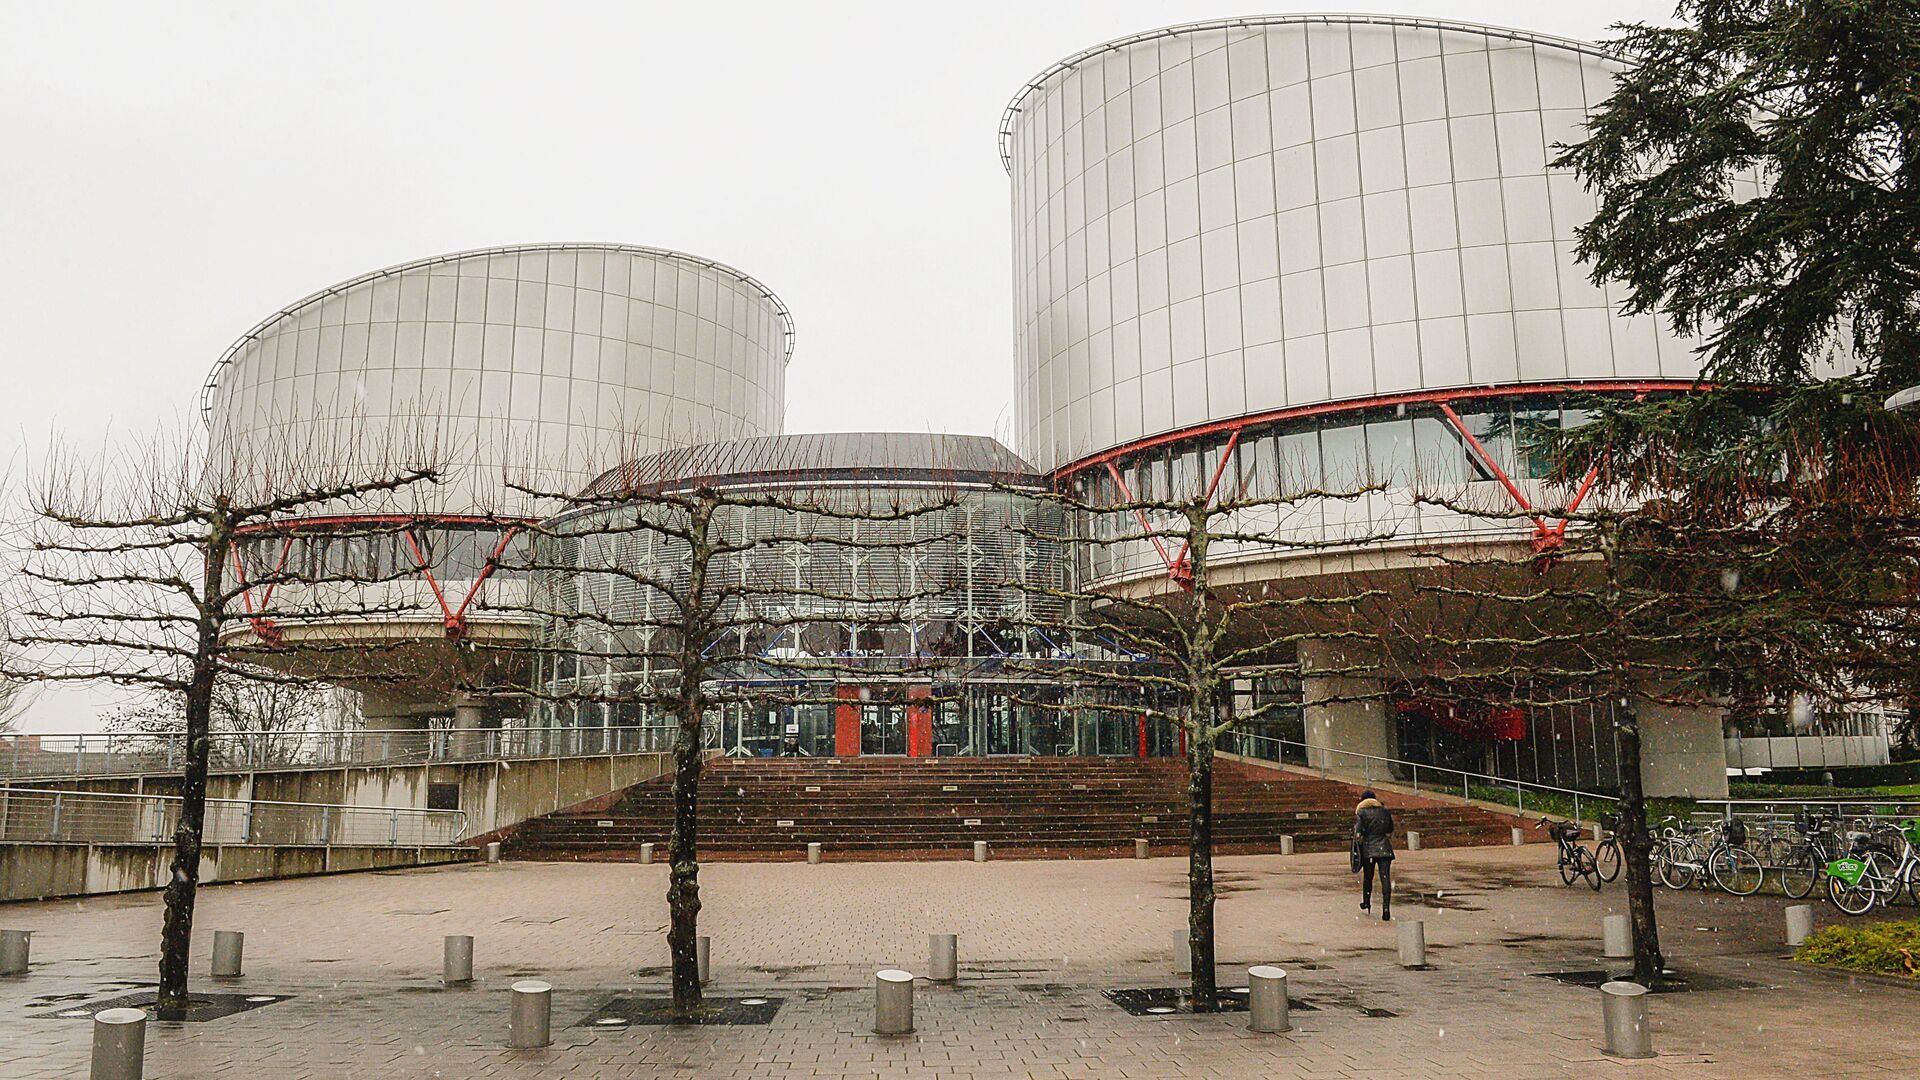 Здание Европейского суда по правам человека, архивное фото - Sputnik Latvija, 1920, 09.04.2021